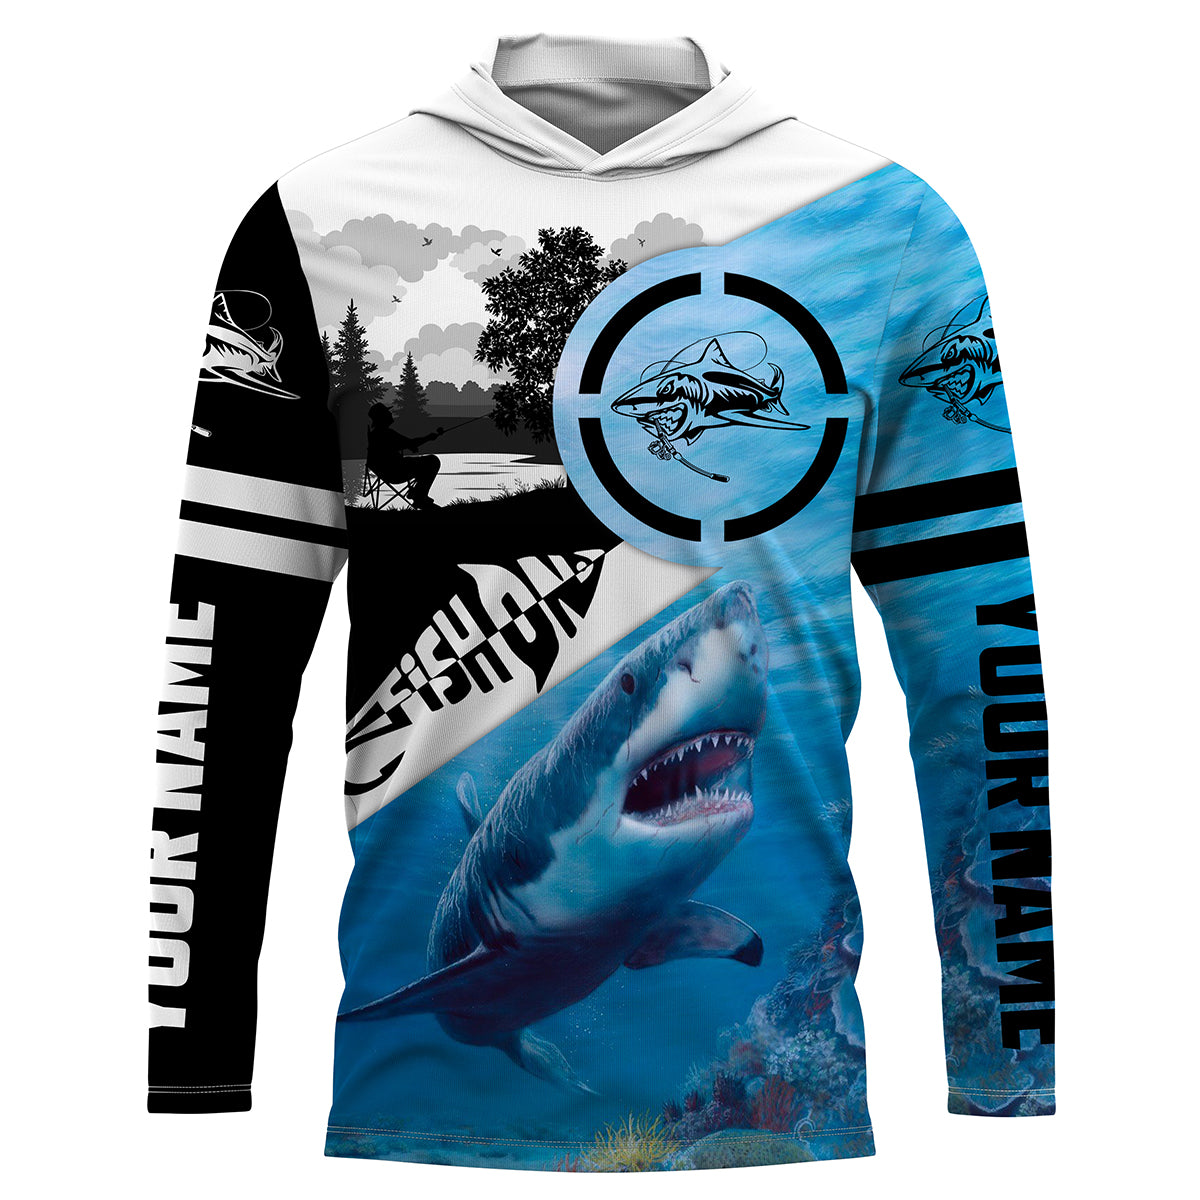 Shark fishing fish on fishing shirts Performance Long Sleeve UV